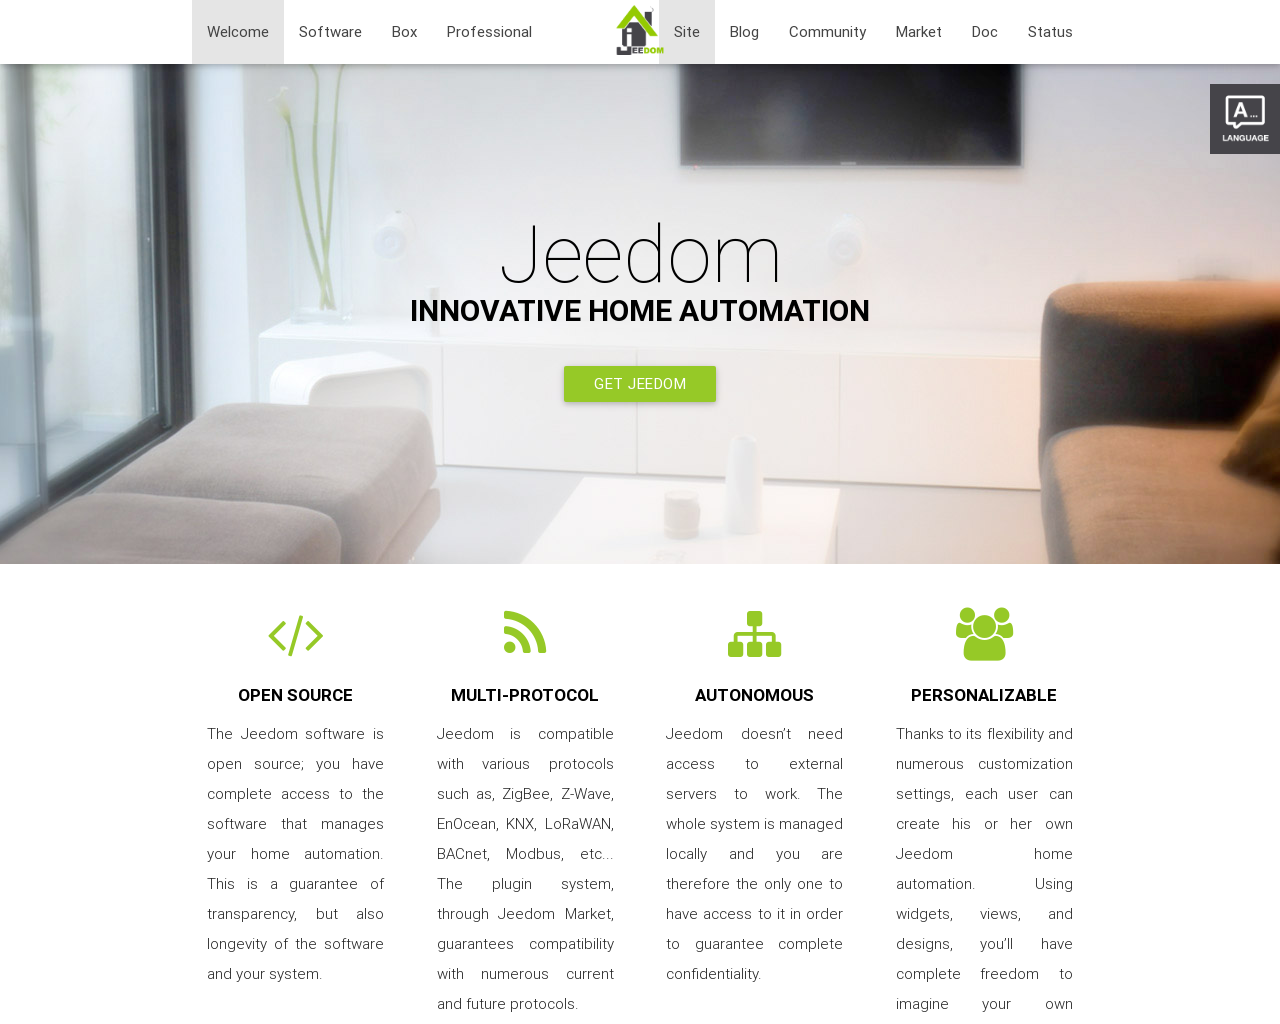 www.jeedom.com